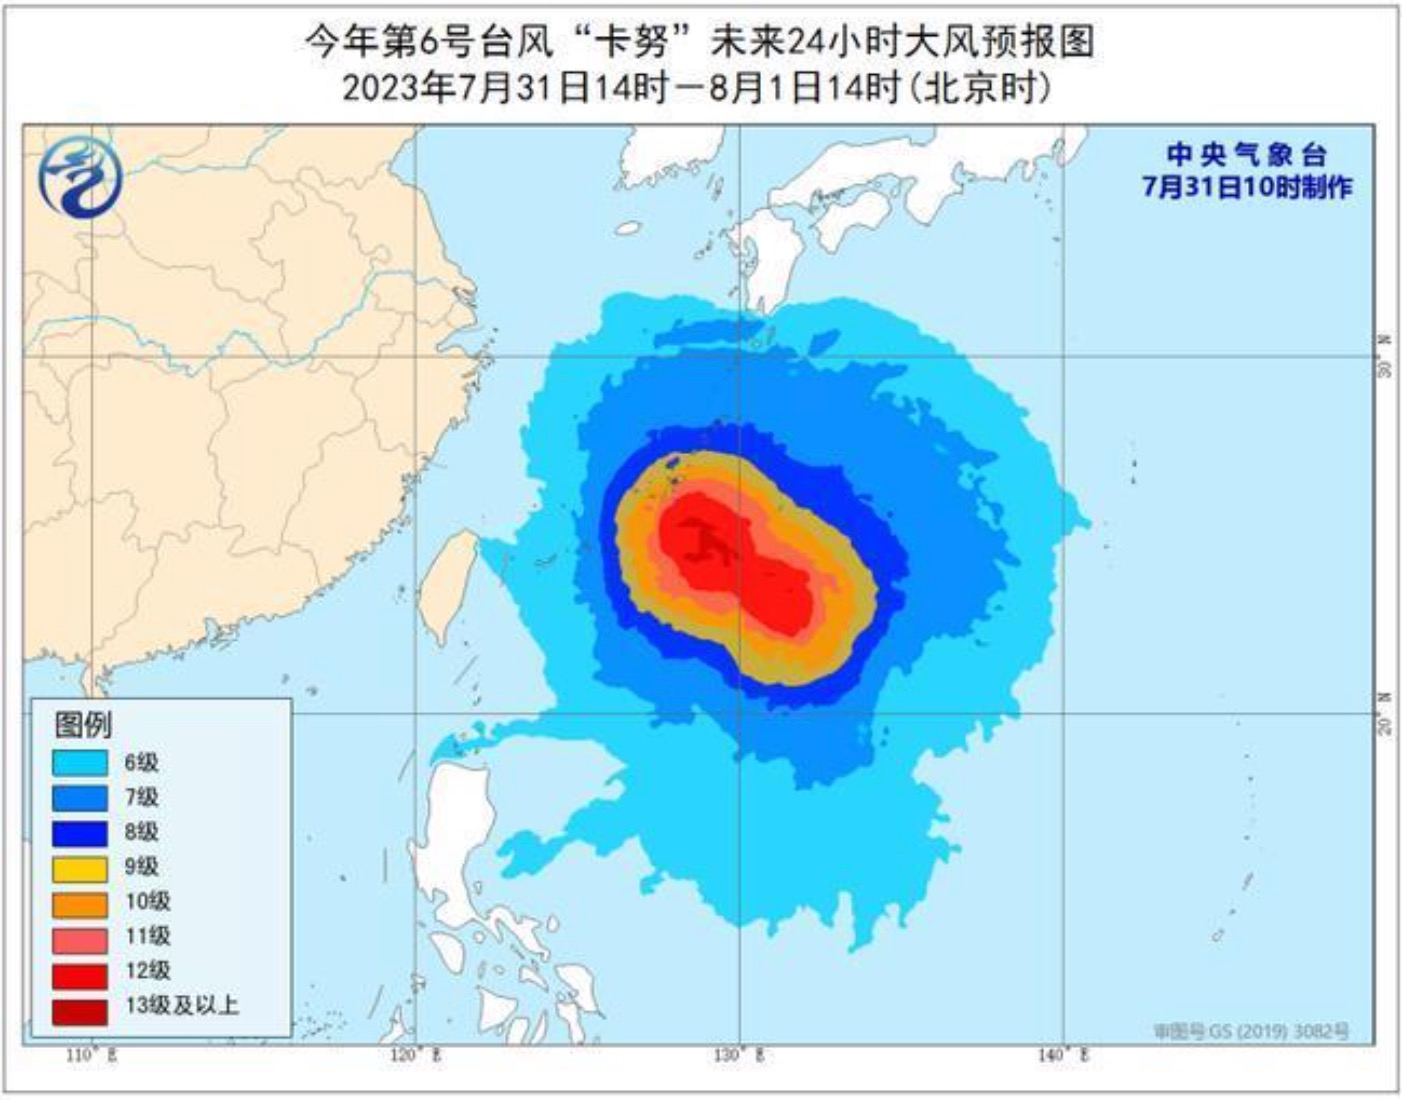 12级强台风！北海发布台风黄色预警，最低气温降至18℃！_阵风